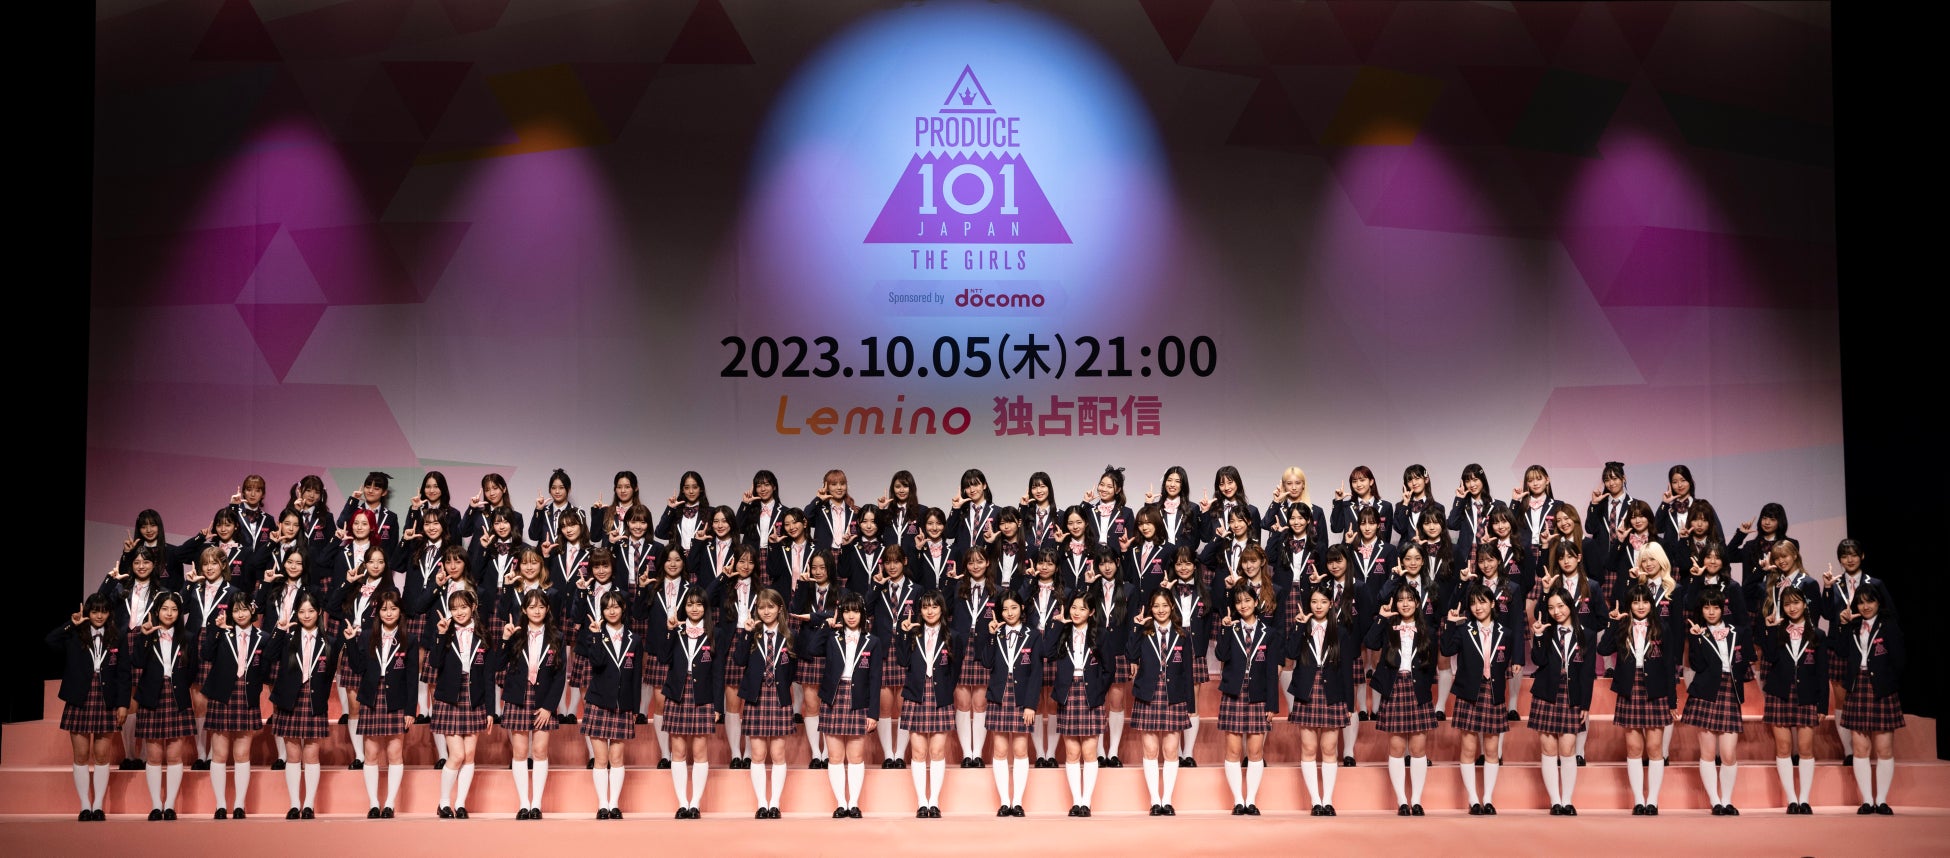 LEAP HIGH～君の夢は、時を越えて～『PRODUCE 101 JAPAN THE GIRLS』いよいよ本日21:00より、Lemino独占無料配信＆投票開始‼